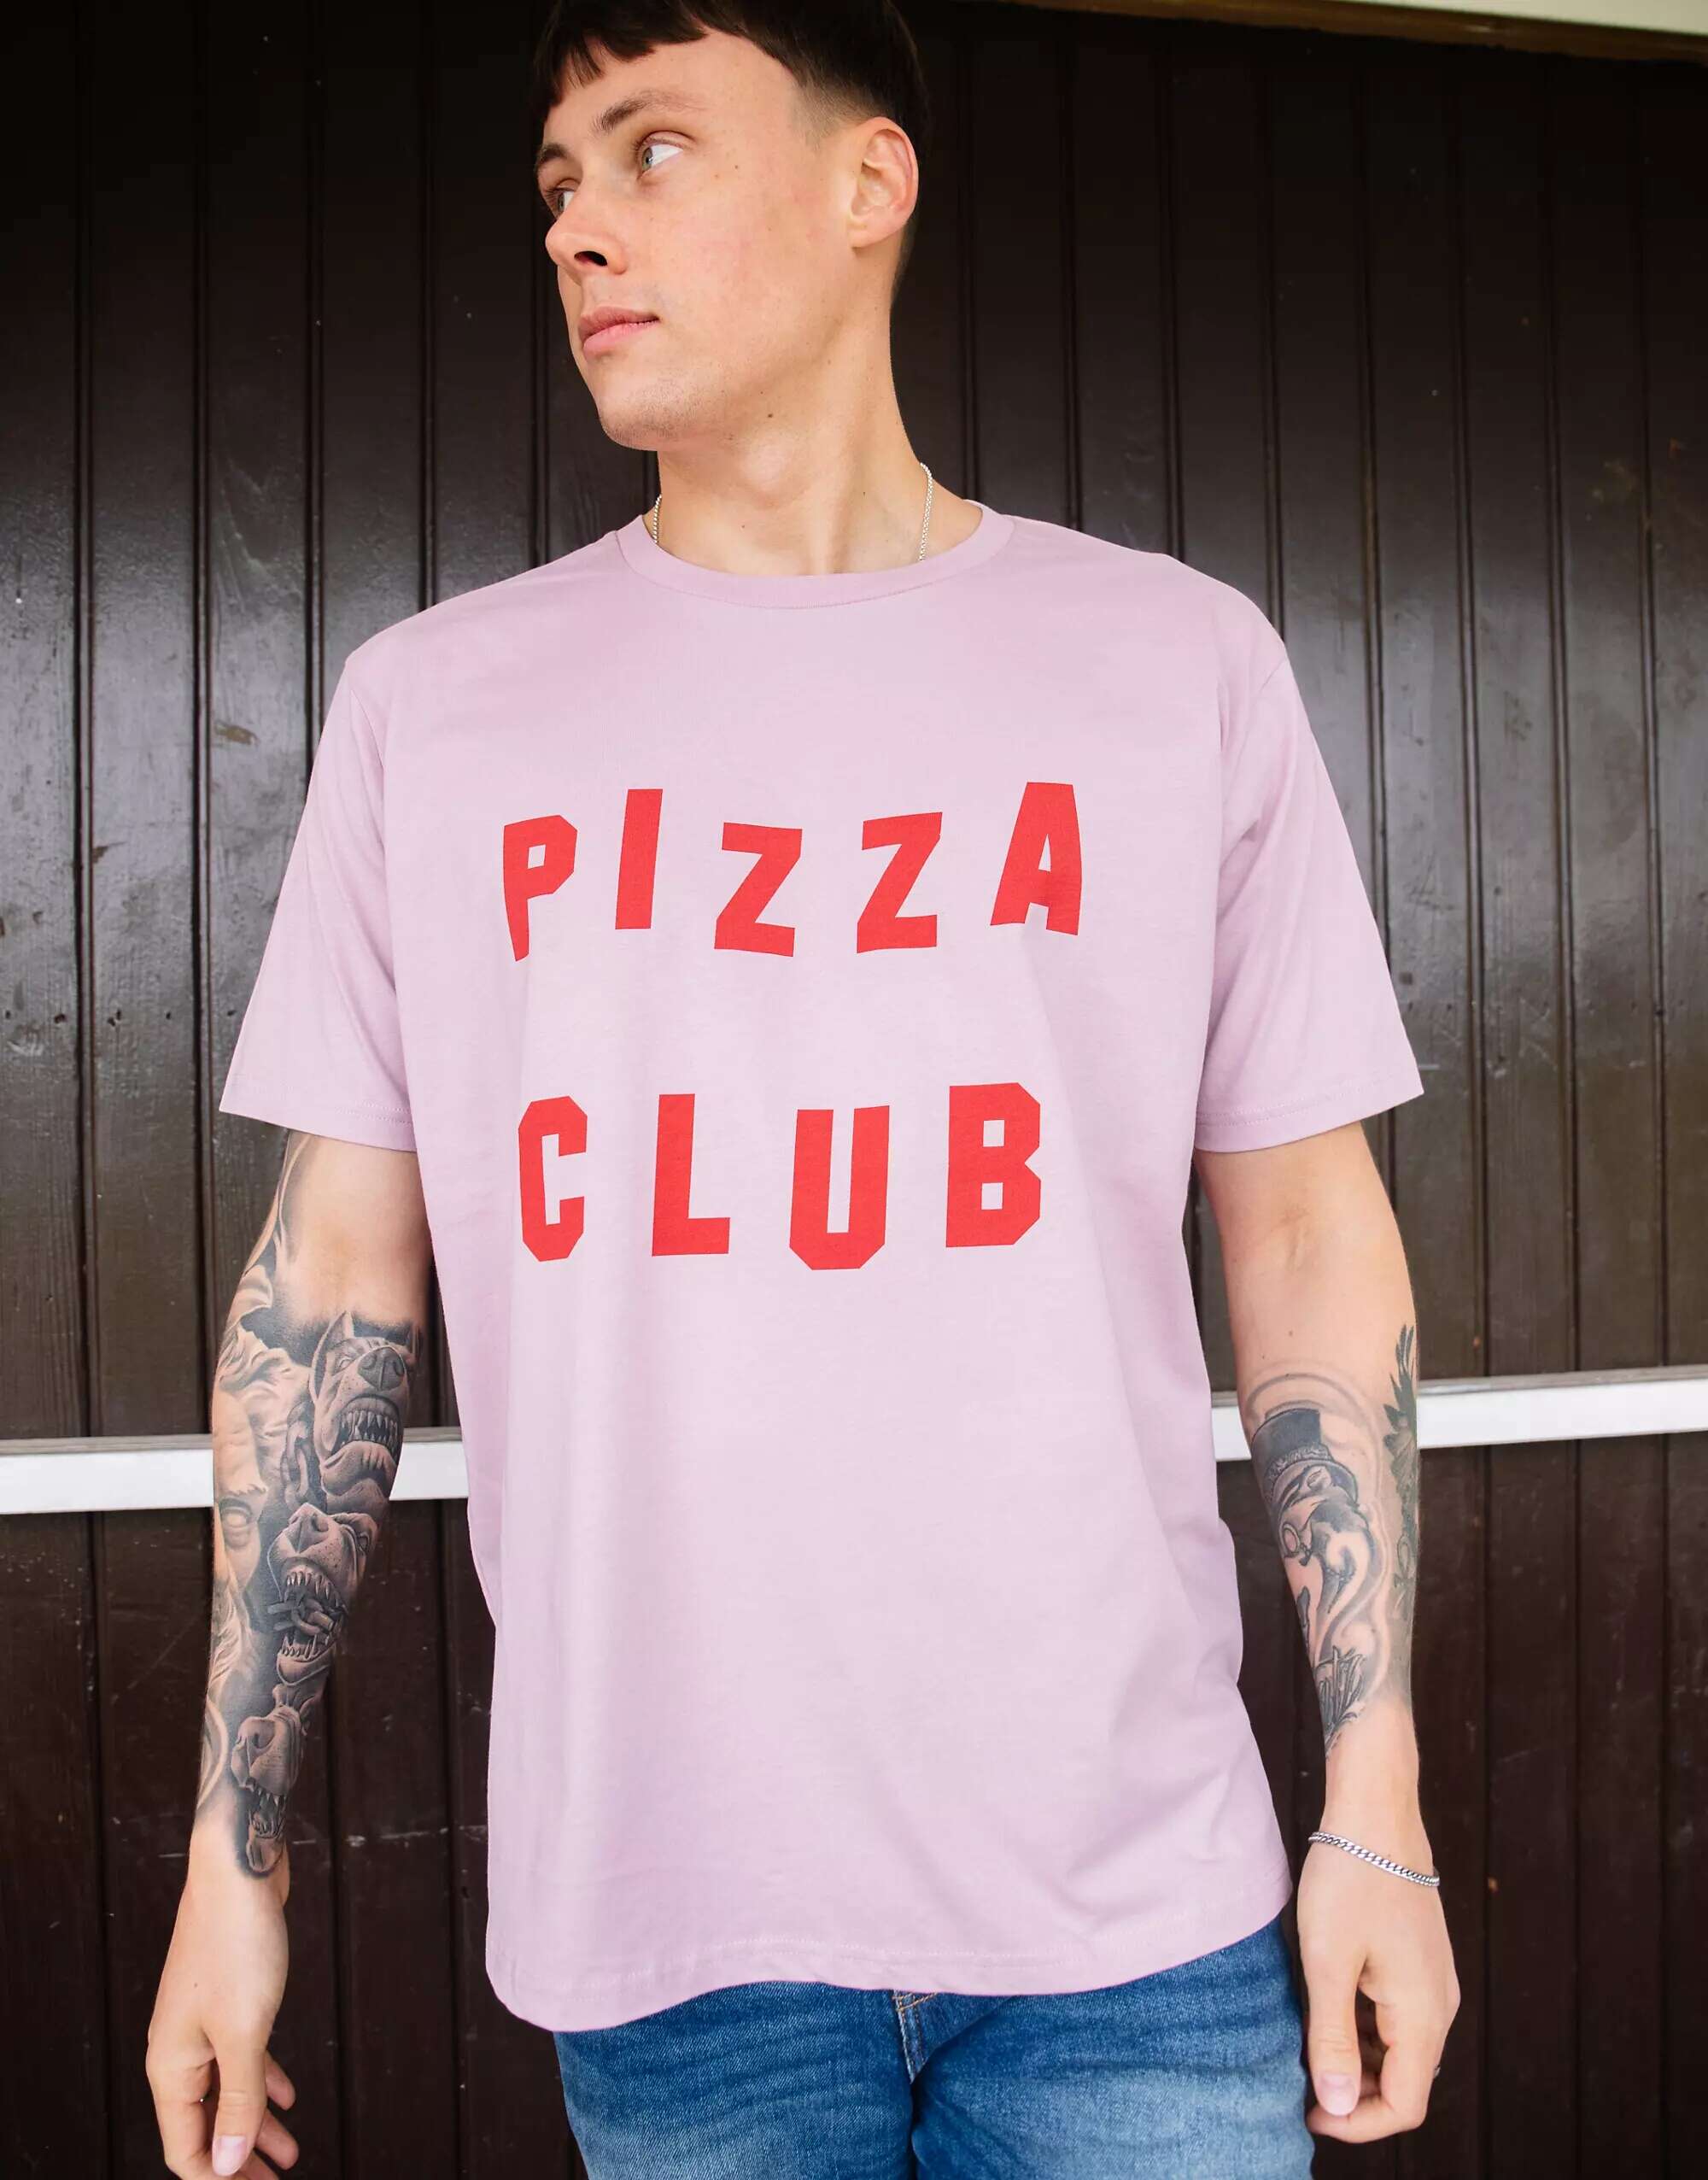 фиолетовая футболка унисекс с надписью завтрак в постели batch1 Фиолетовая футболка унисекс с надписью Pizza Club Batch1